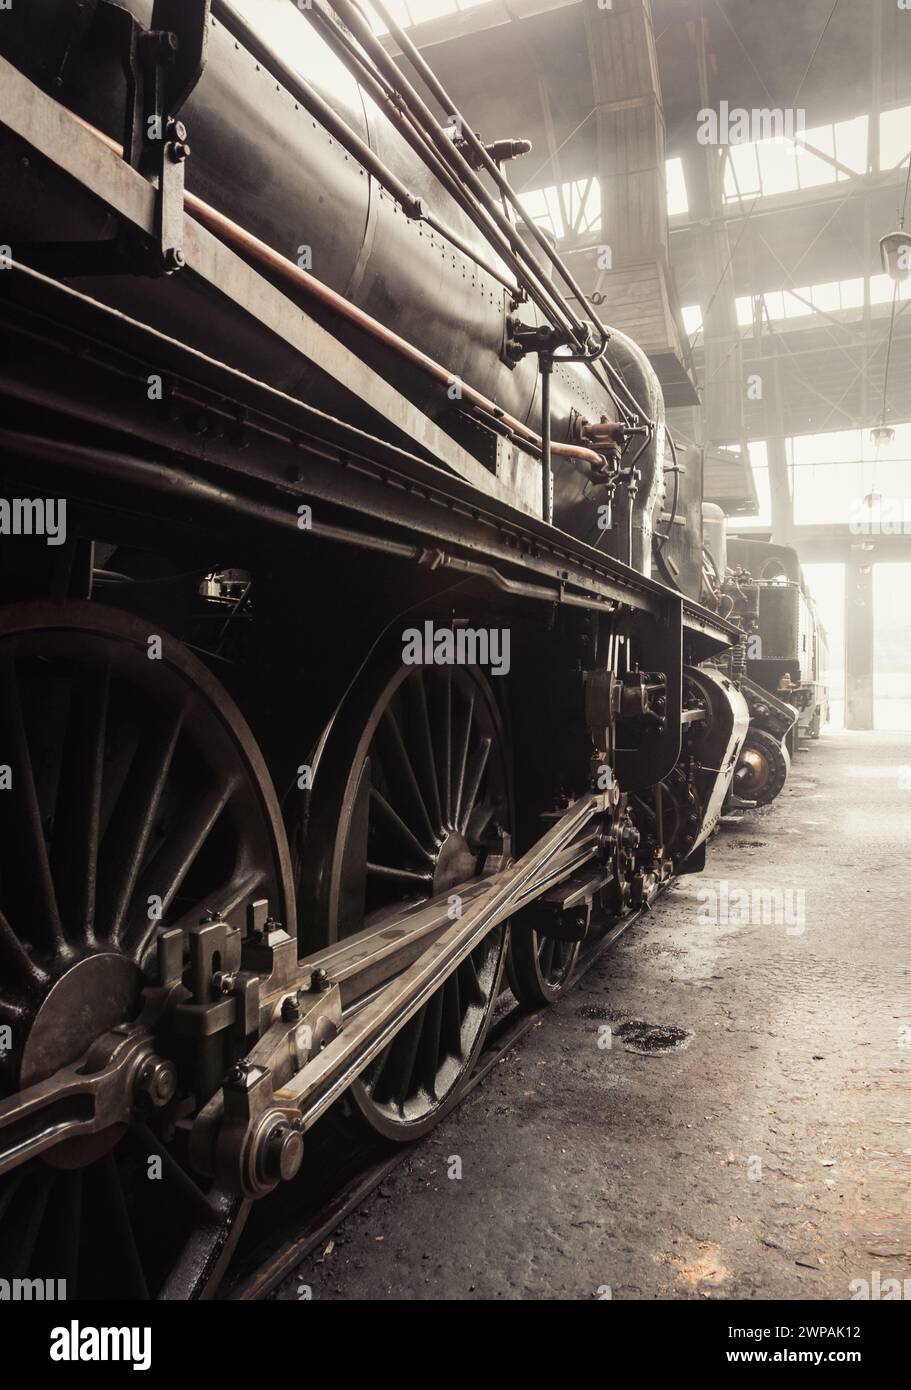 Steam Ära - alte Dampflokomotive im Zughaus. Dampflokomotive im Depot. Bild in warmen Tönen (fast Sepia). Der Innenraum des Depots ist mit Rauch gefüllt. Stockfoto